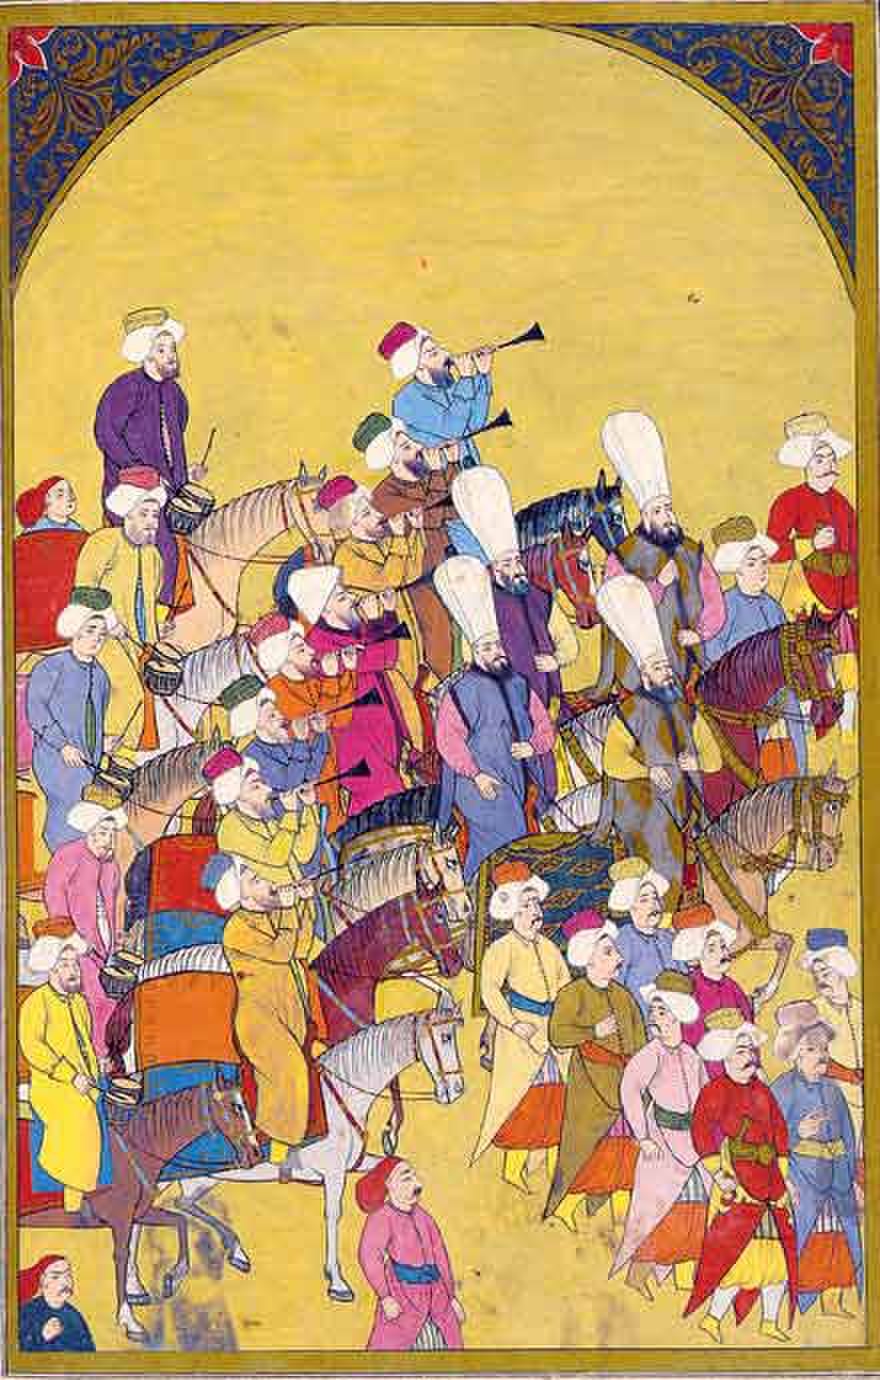 Ottoman campaign of 1388